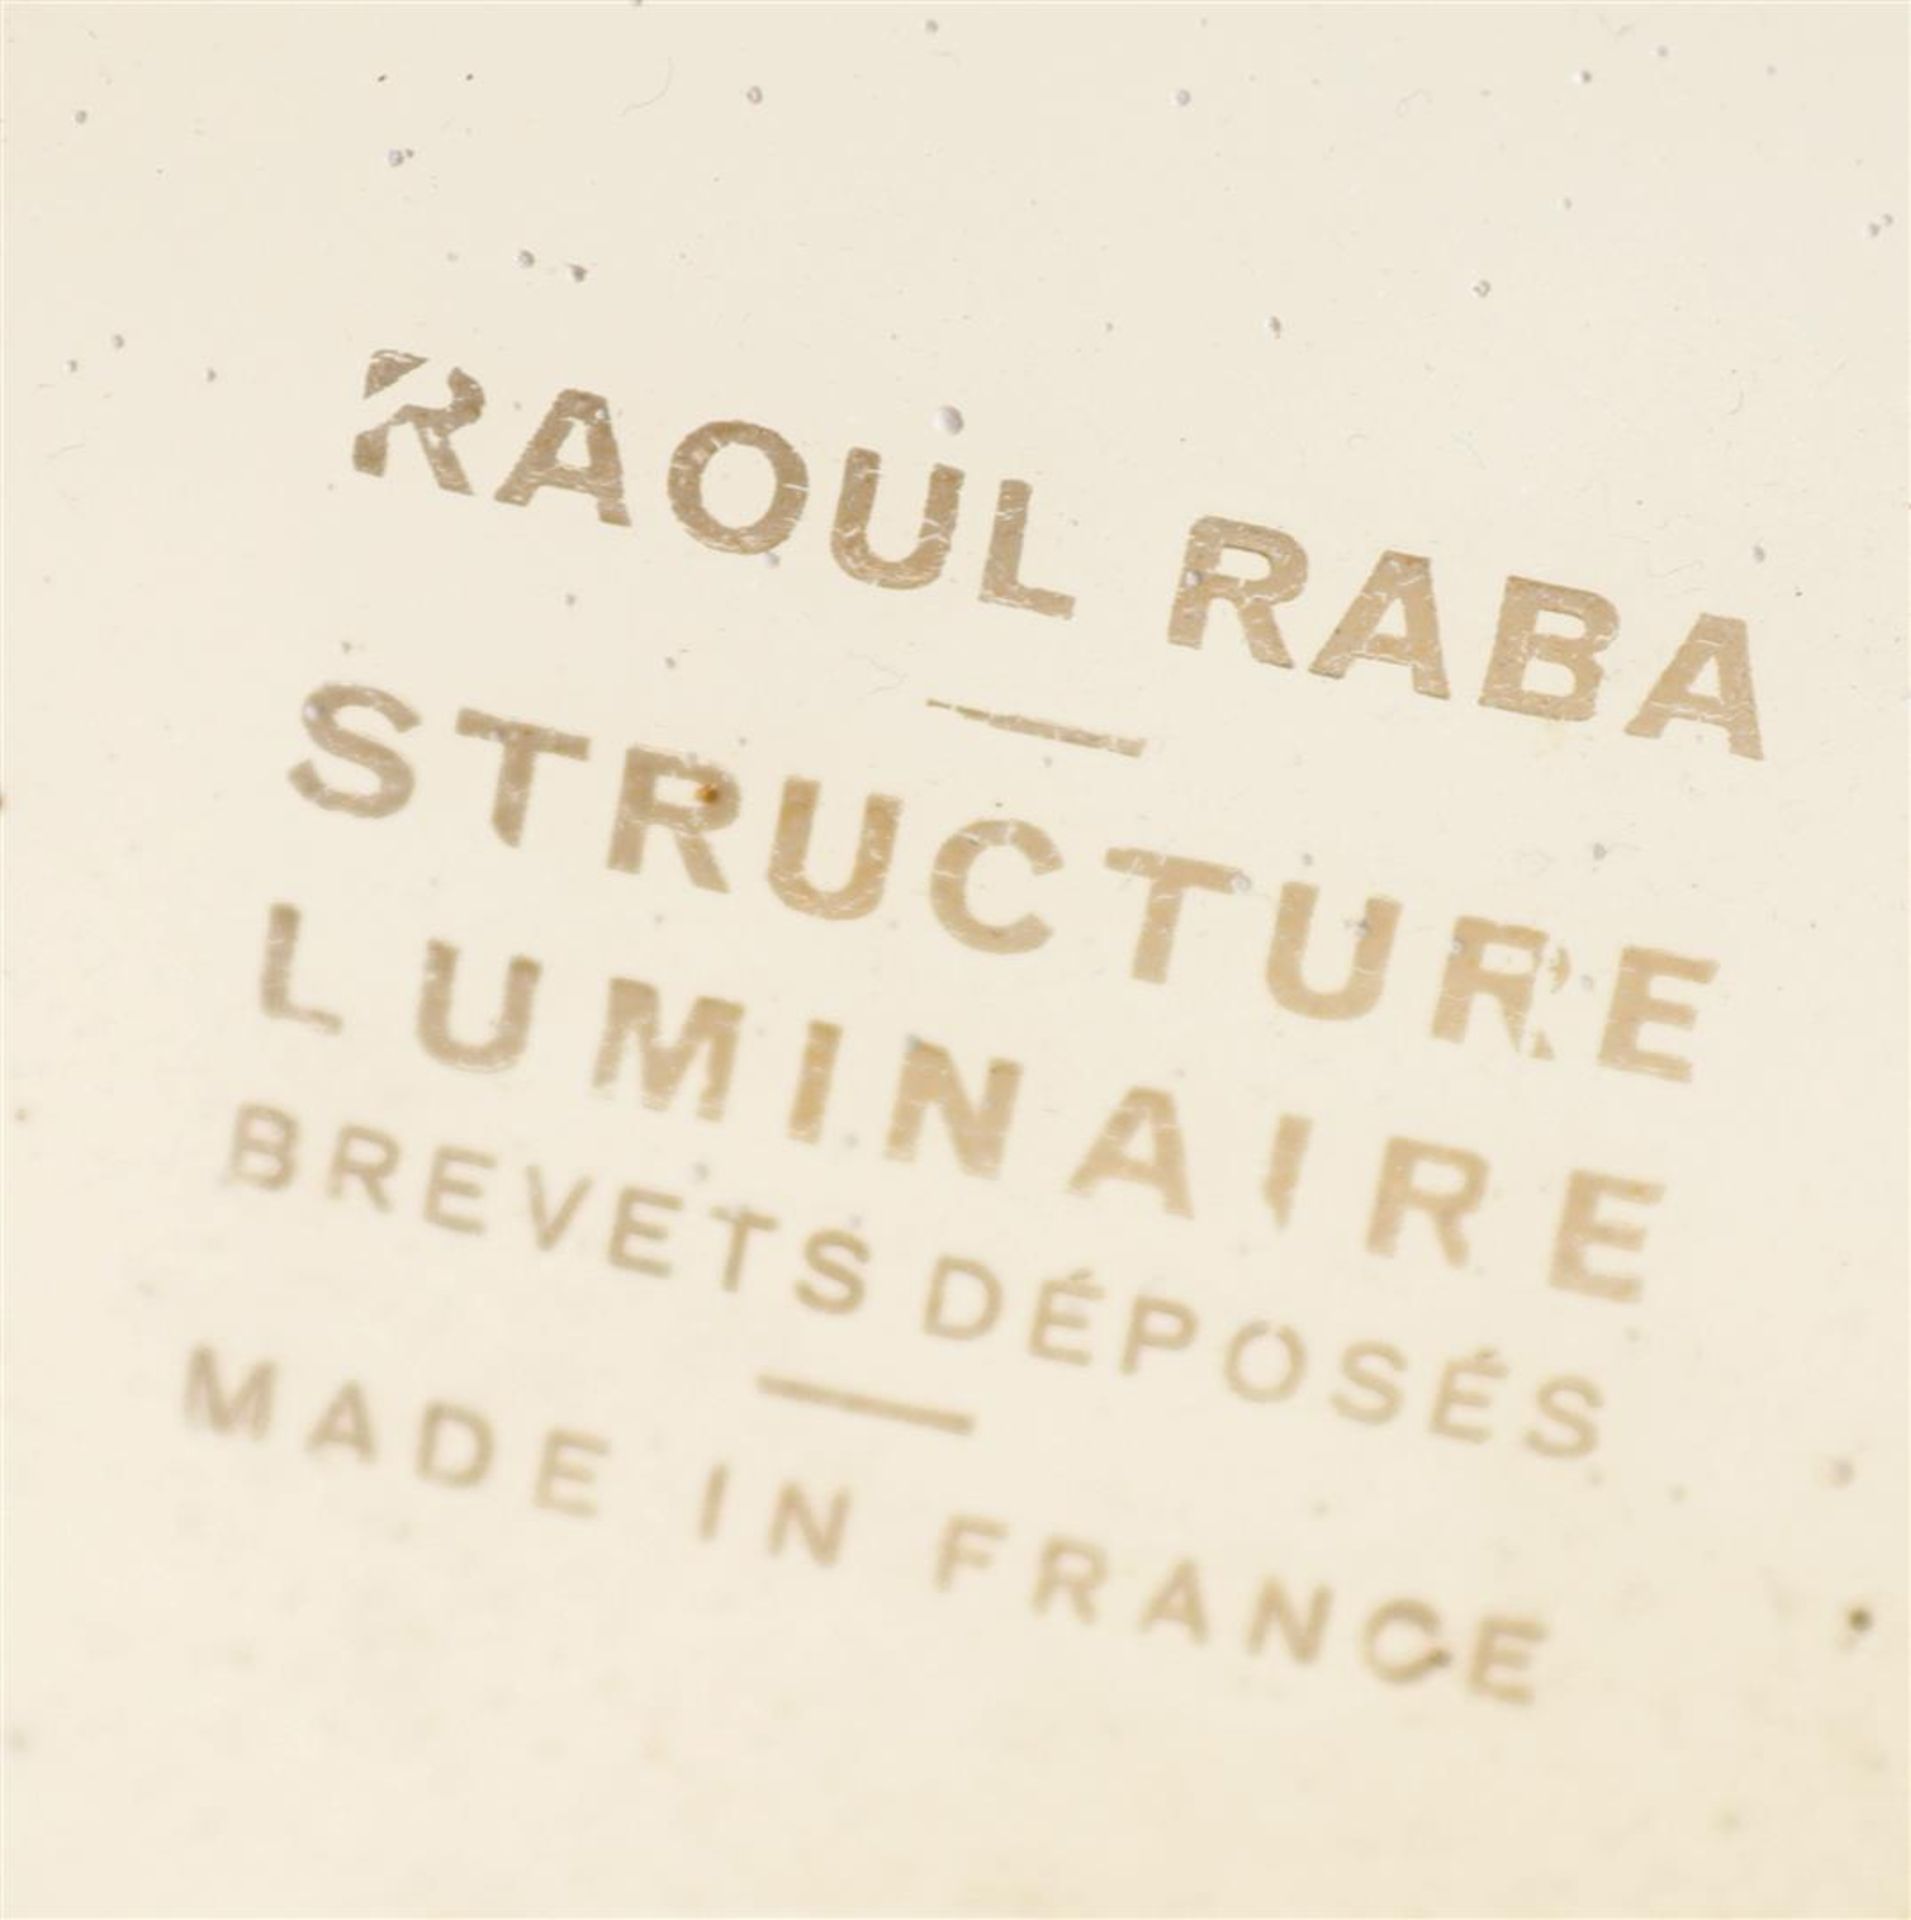 Raoul Raba - Bild 2 aus 3